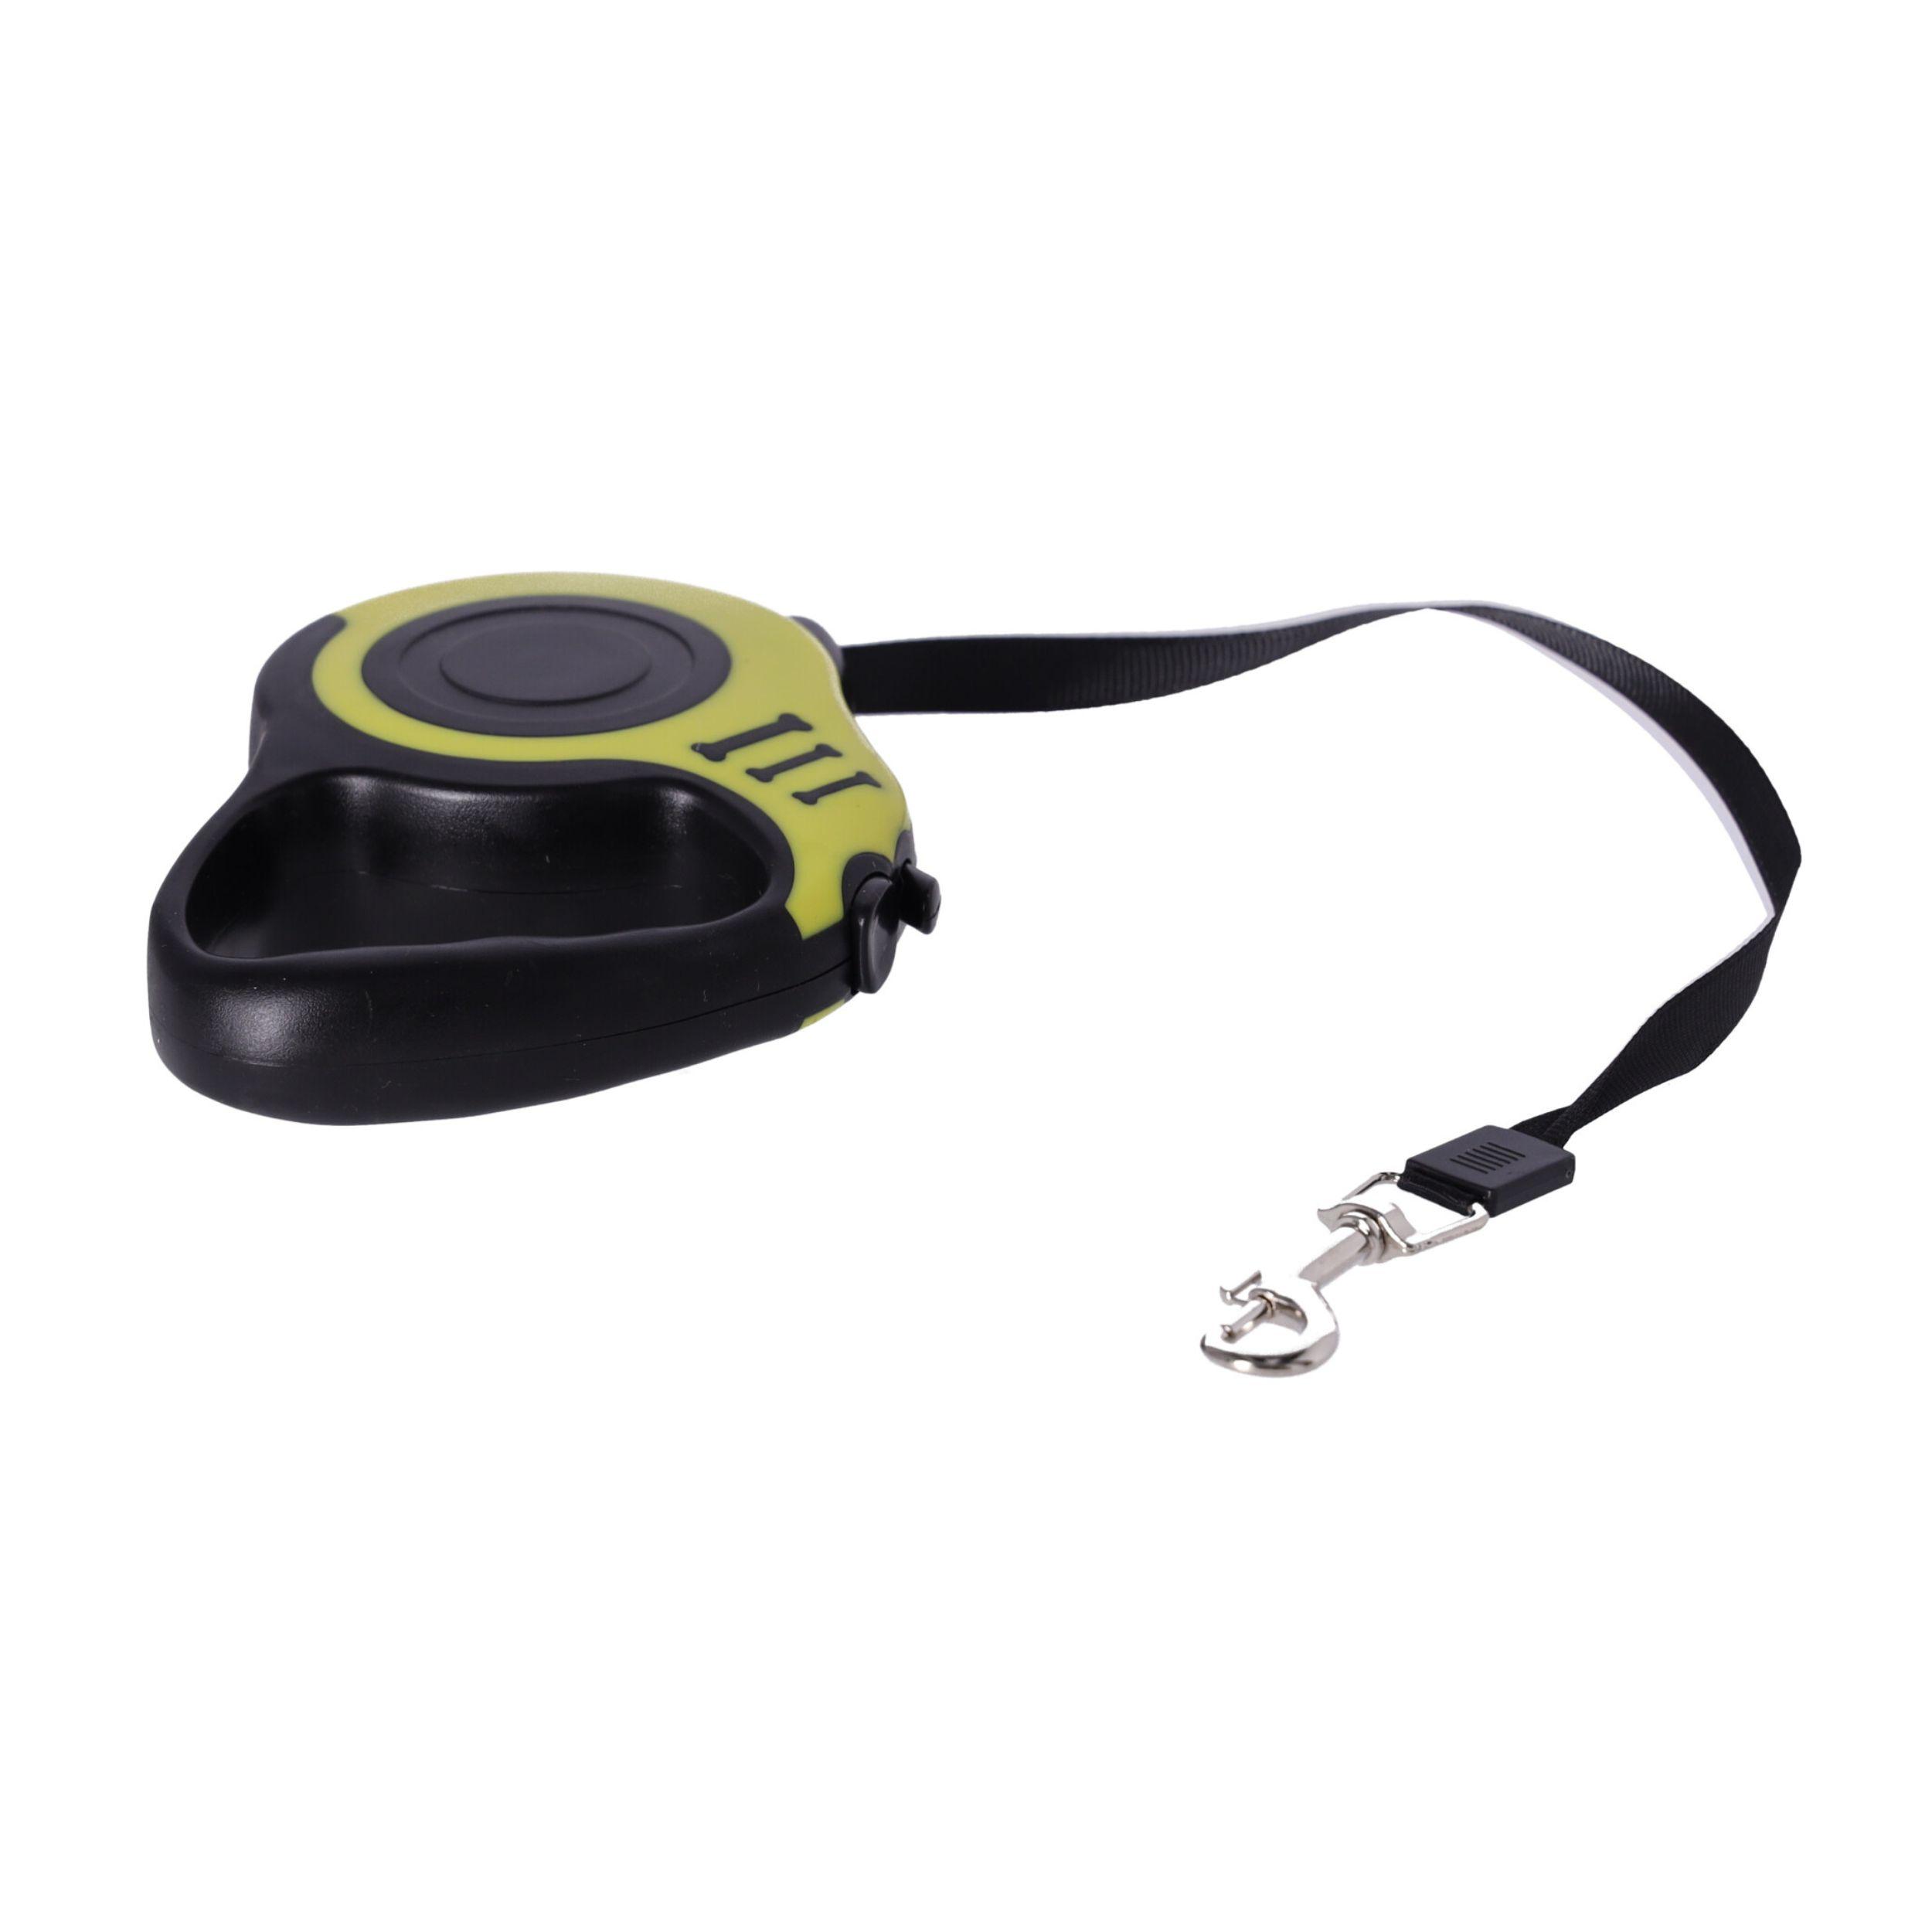 Automatic dog leash / tape leash - L. 3m, type I